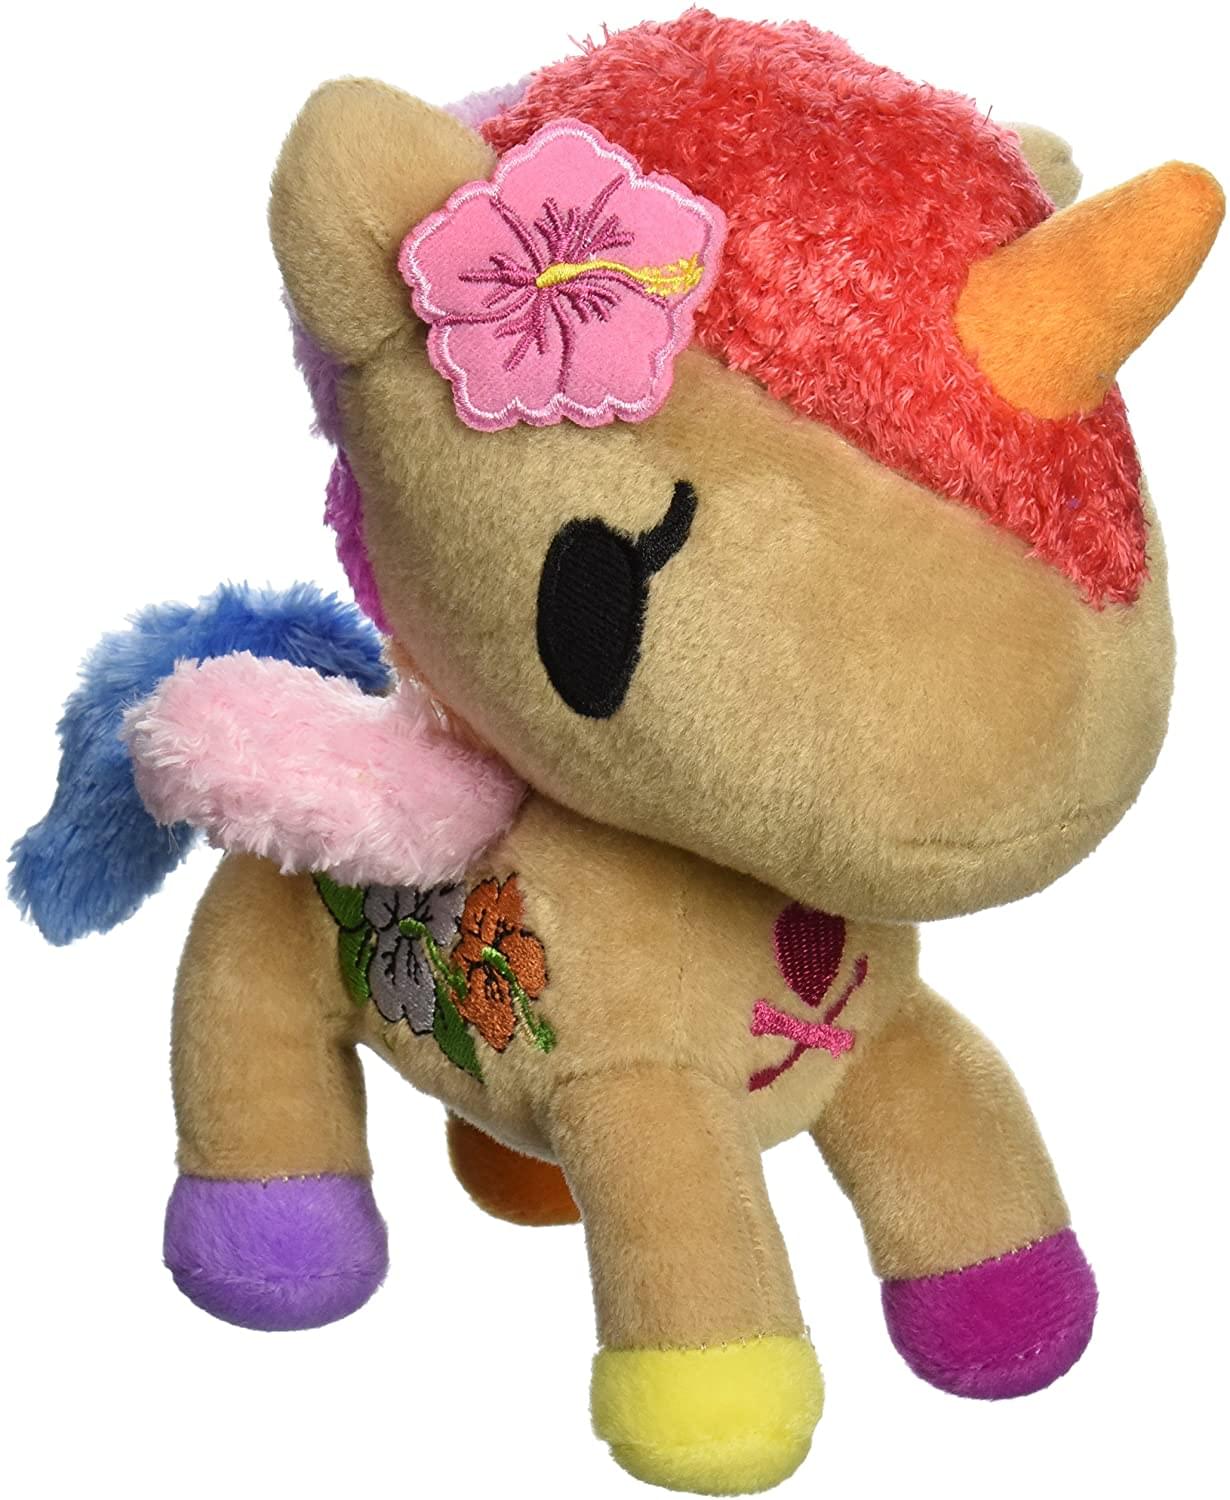 Flower unicorno tokidoki plush keychain